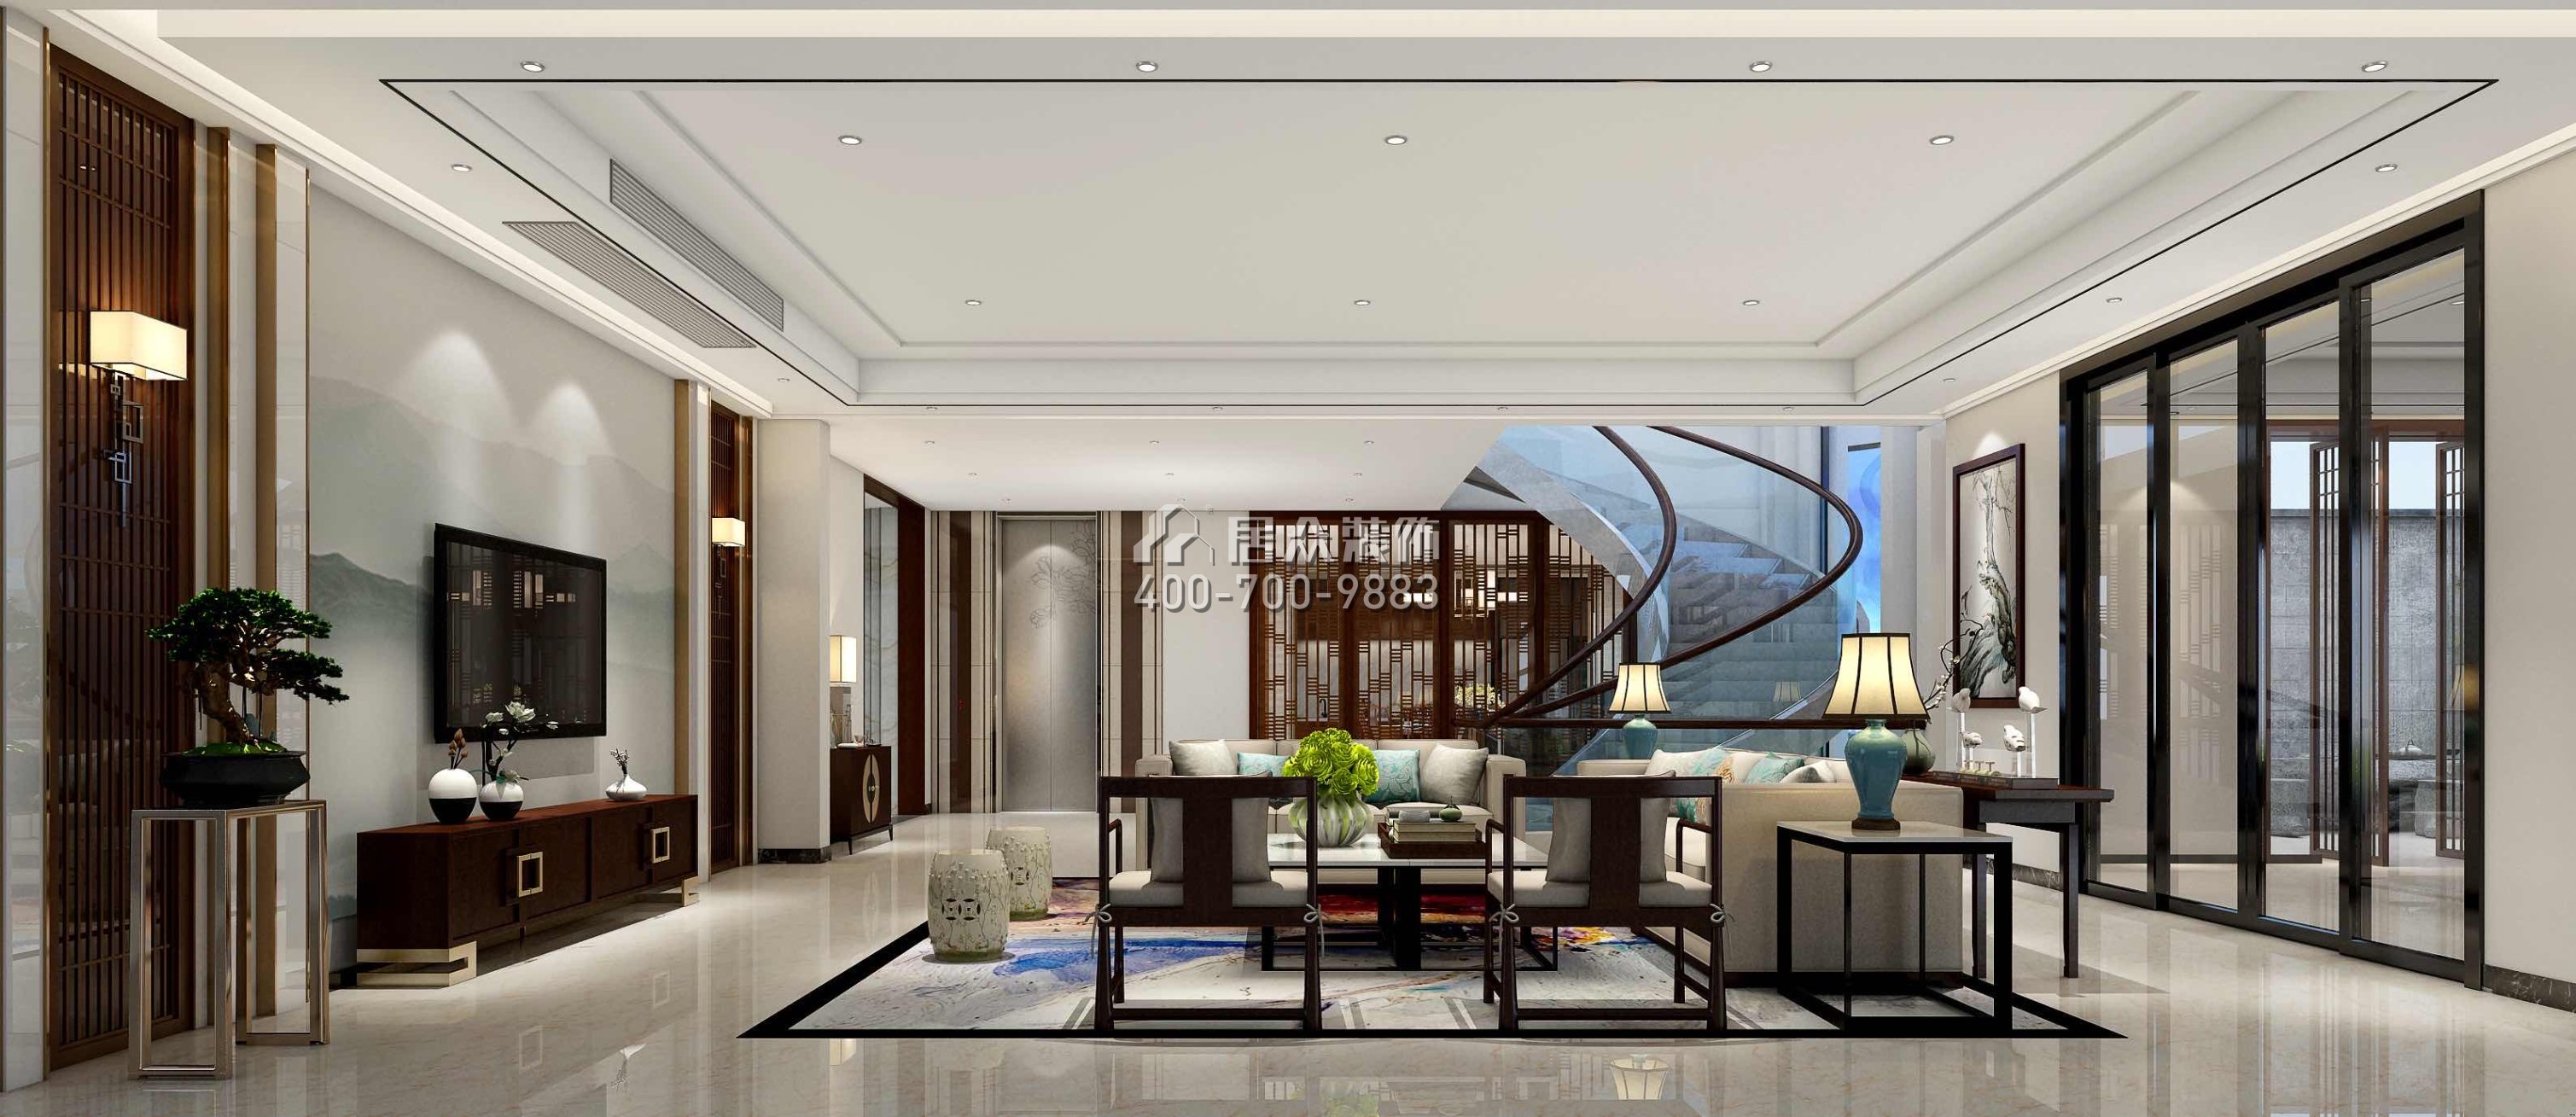 御花苑1200平方米中式风格别墅户型客厅装修效果图